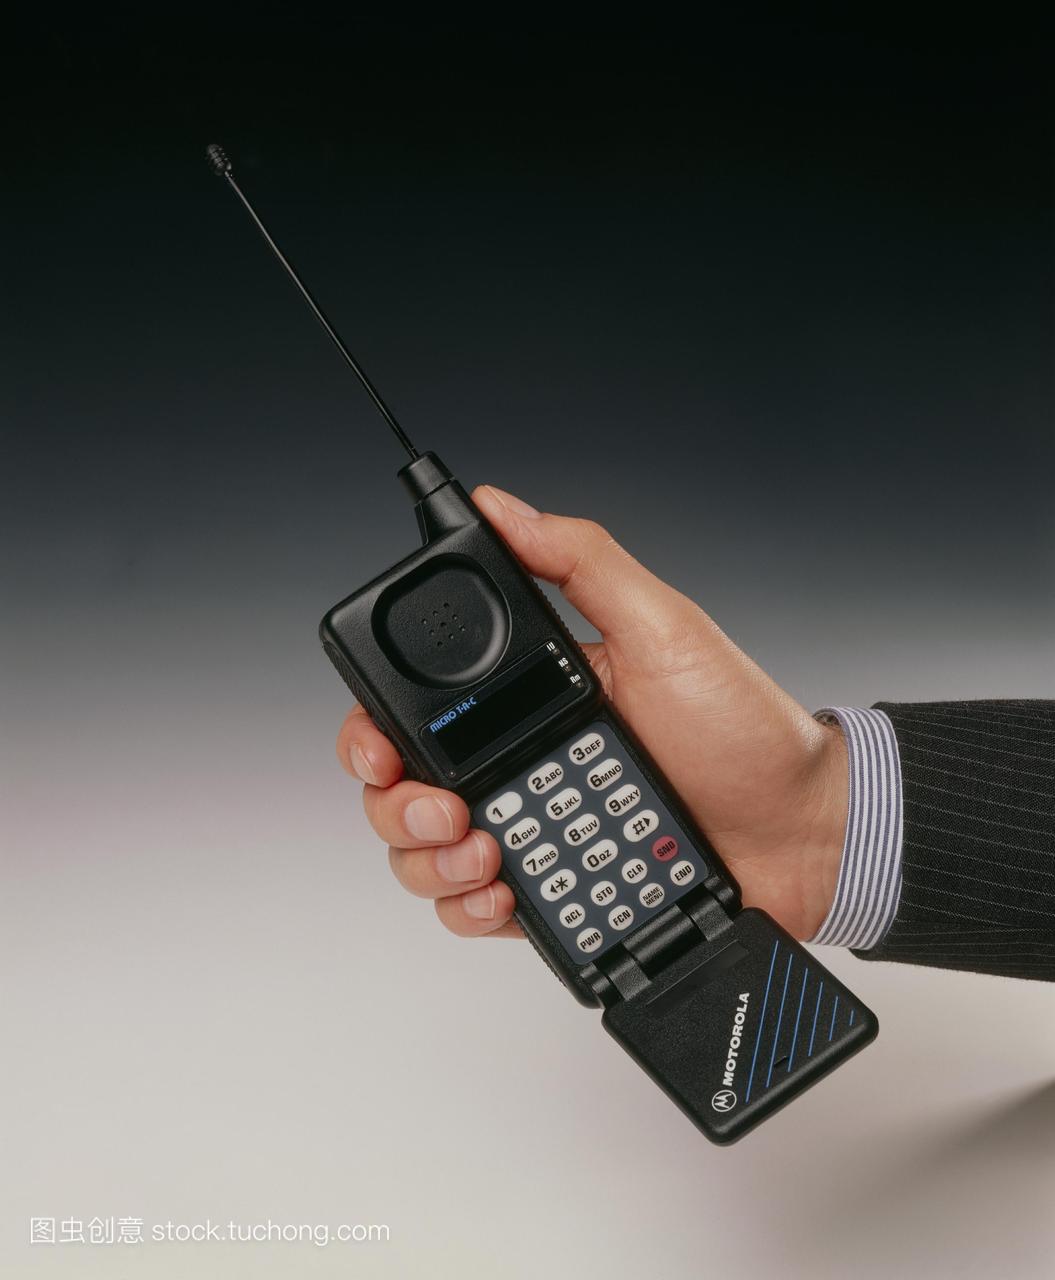 早期的手机。商人手持摩托罗拉的tac手机。